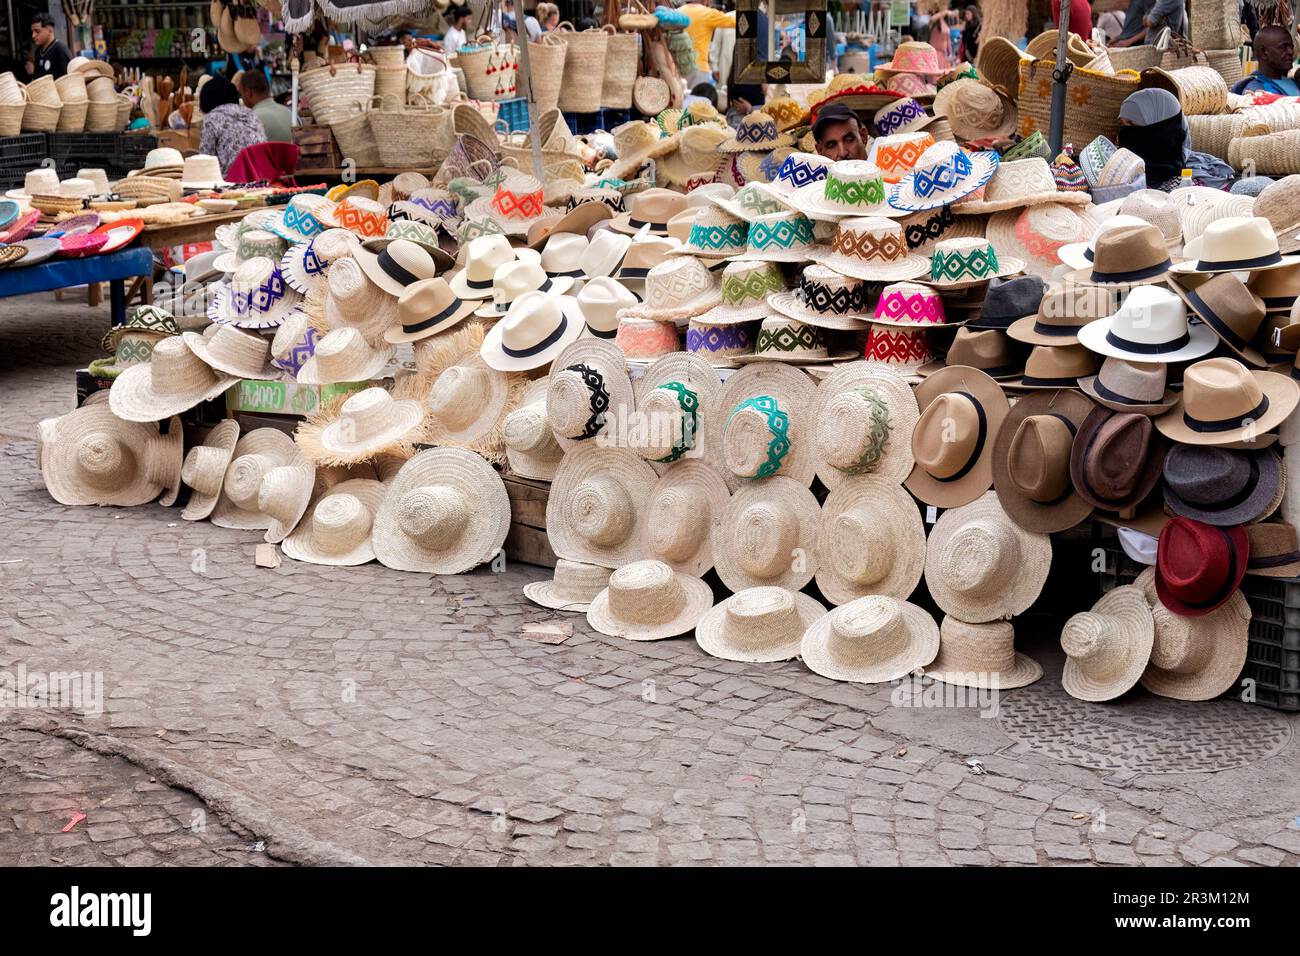 Uno stallo del mercato all'aperto nella zona centrale del Souk della Medina, Marrakech. lo stallo che vende i cappelli di paglia fatti a mano ha abbondanza delle scelte assortite del cappello Foto Stock